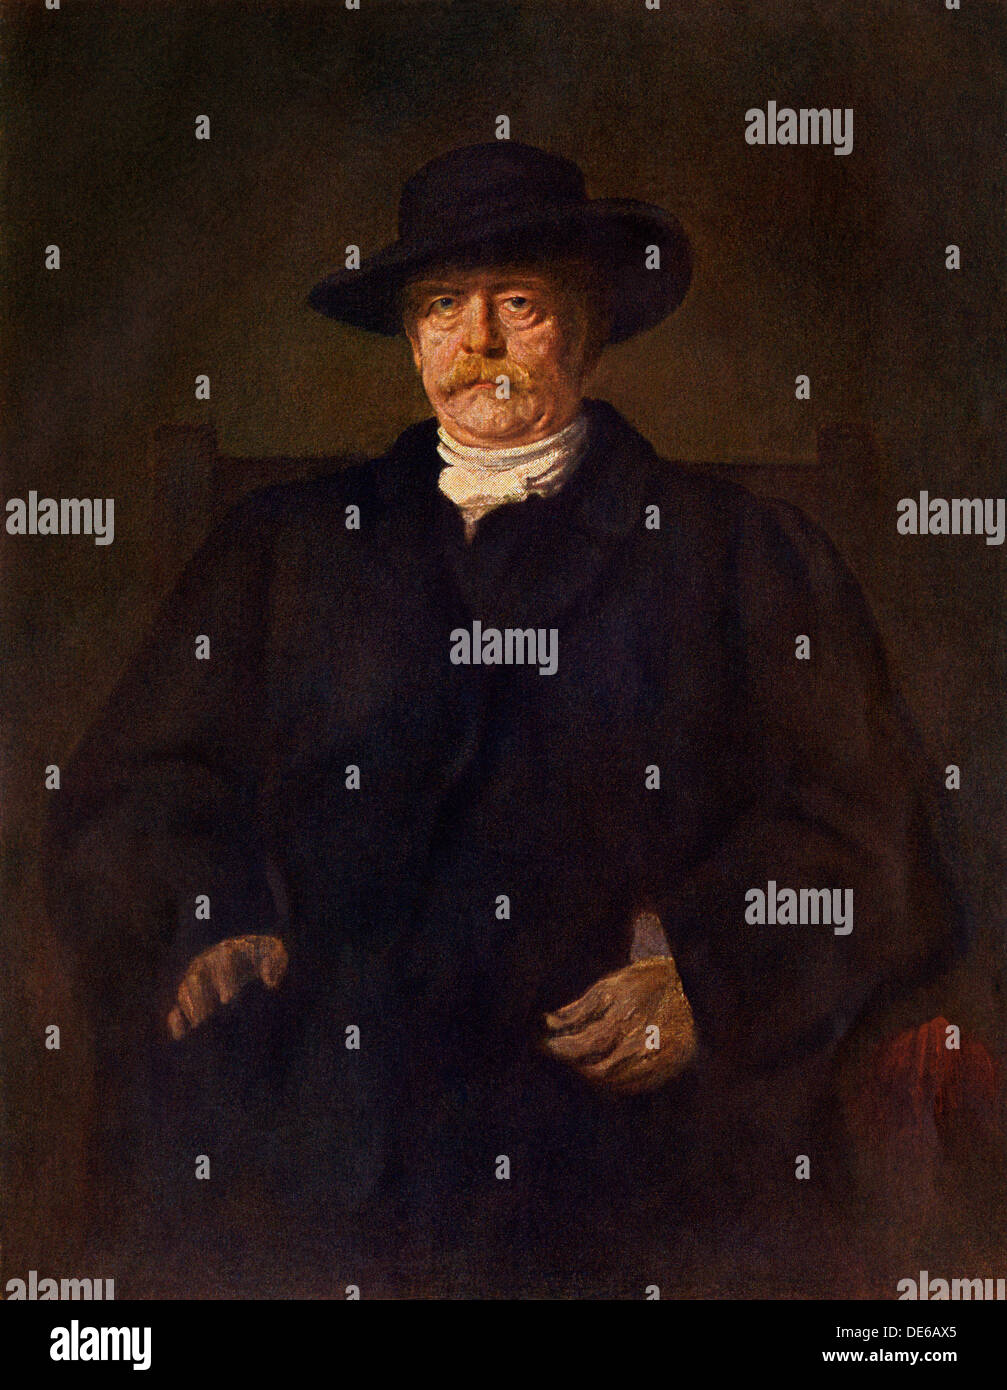 Estadista prusiano Otto von Bismarck. Litografía a color de una pintura de Franz von Lenbach Foto de stock